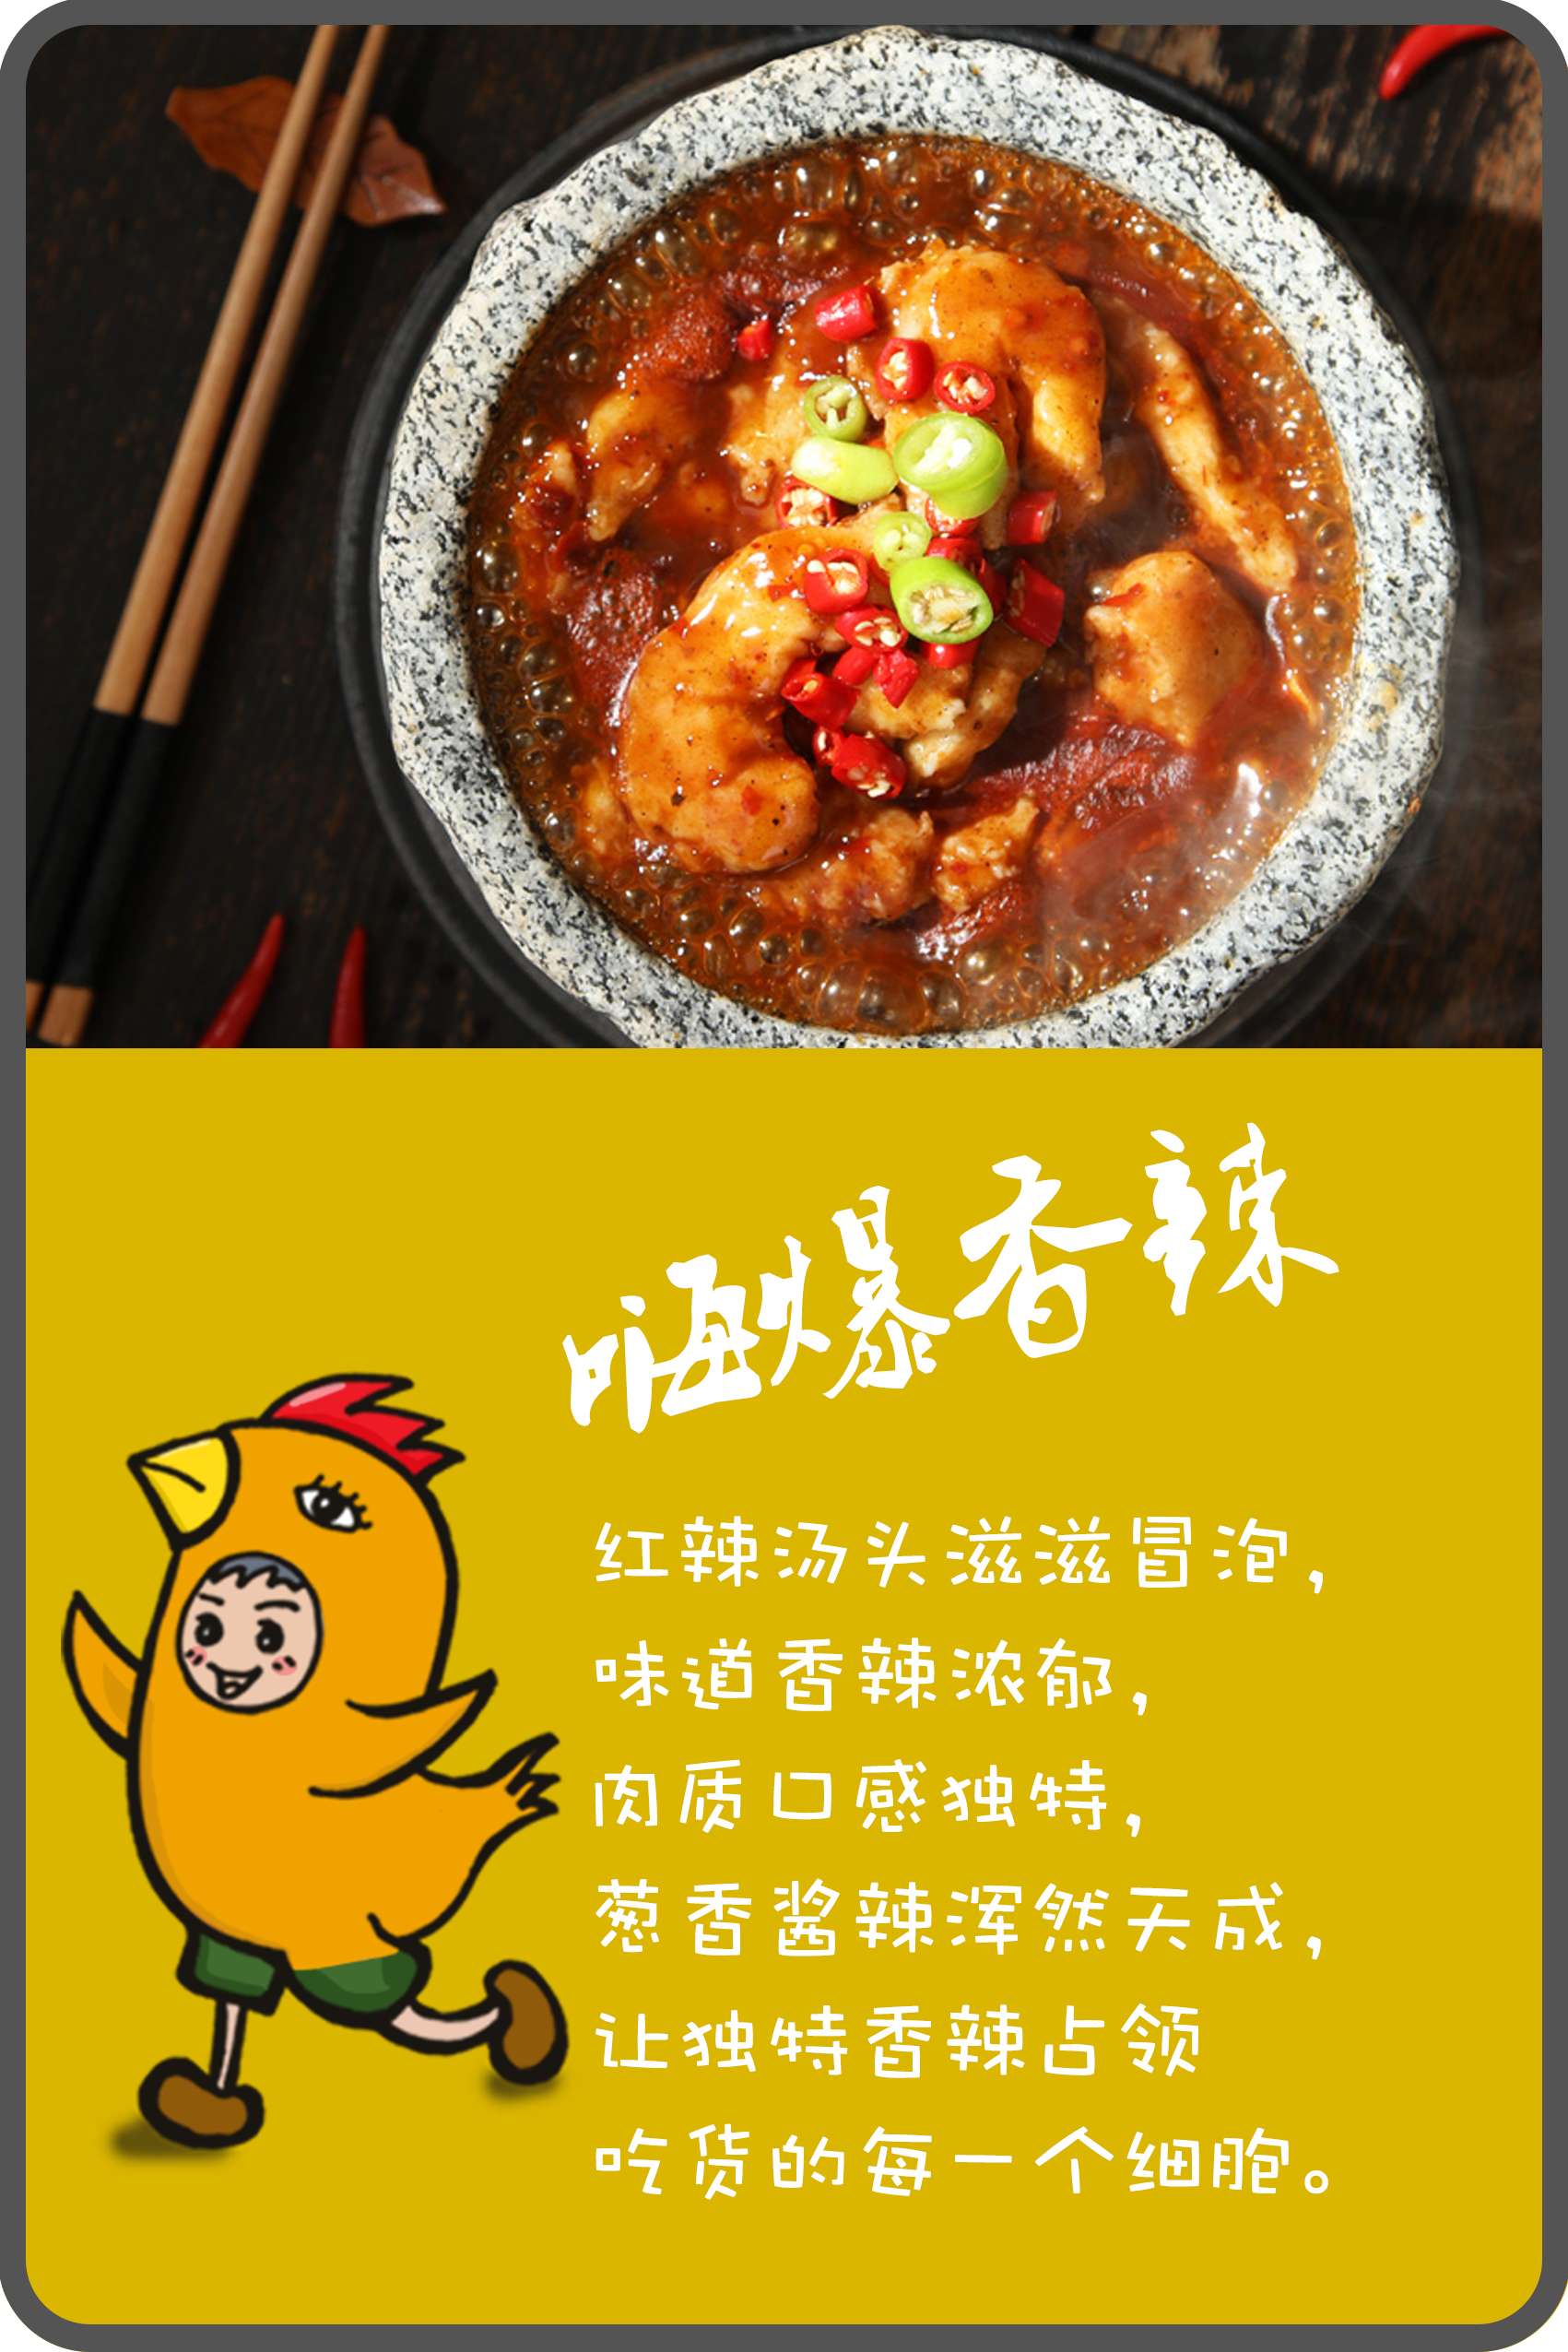 石锅泡泡鸡宣传图片图片